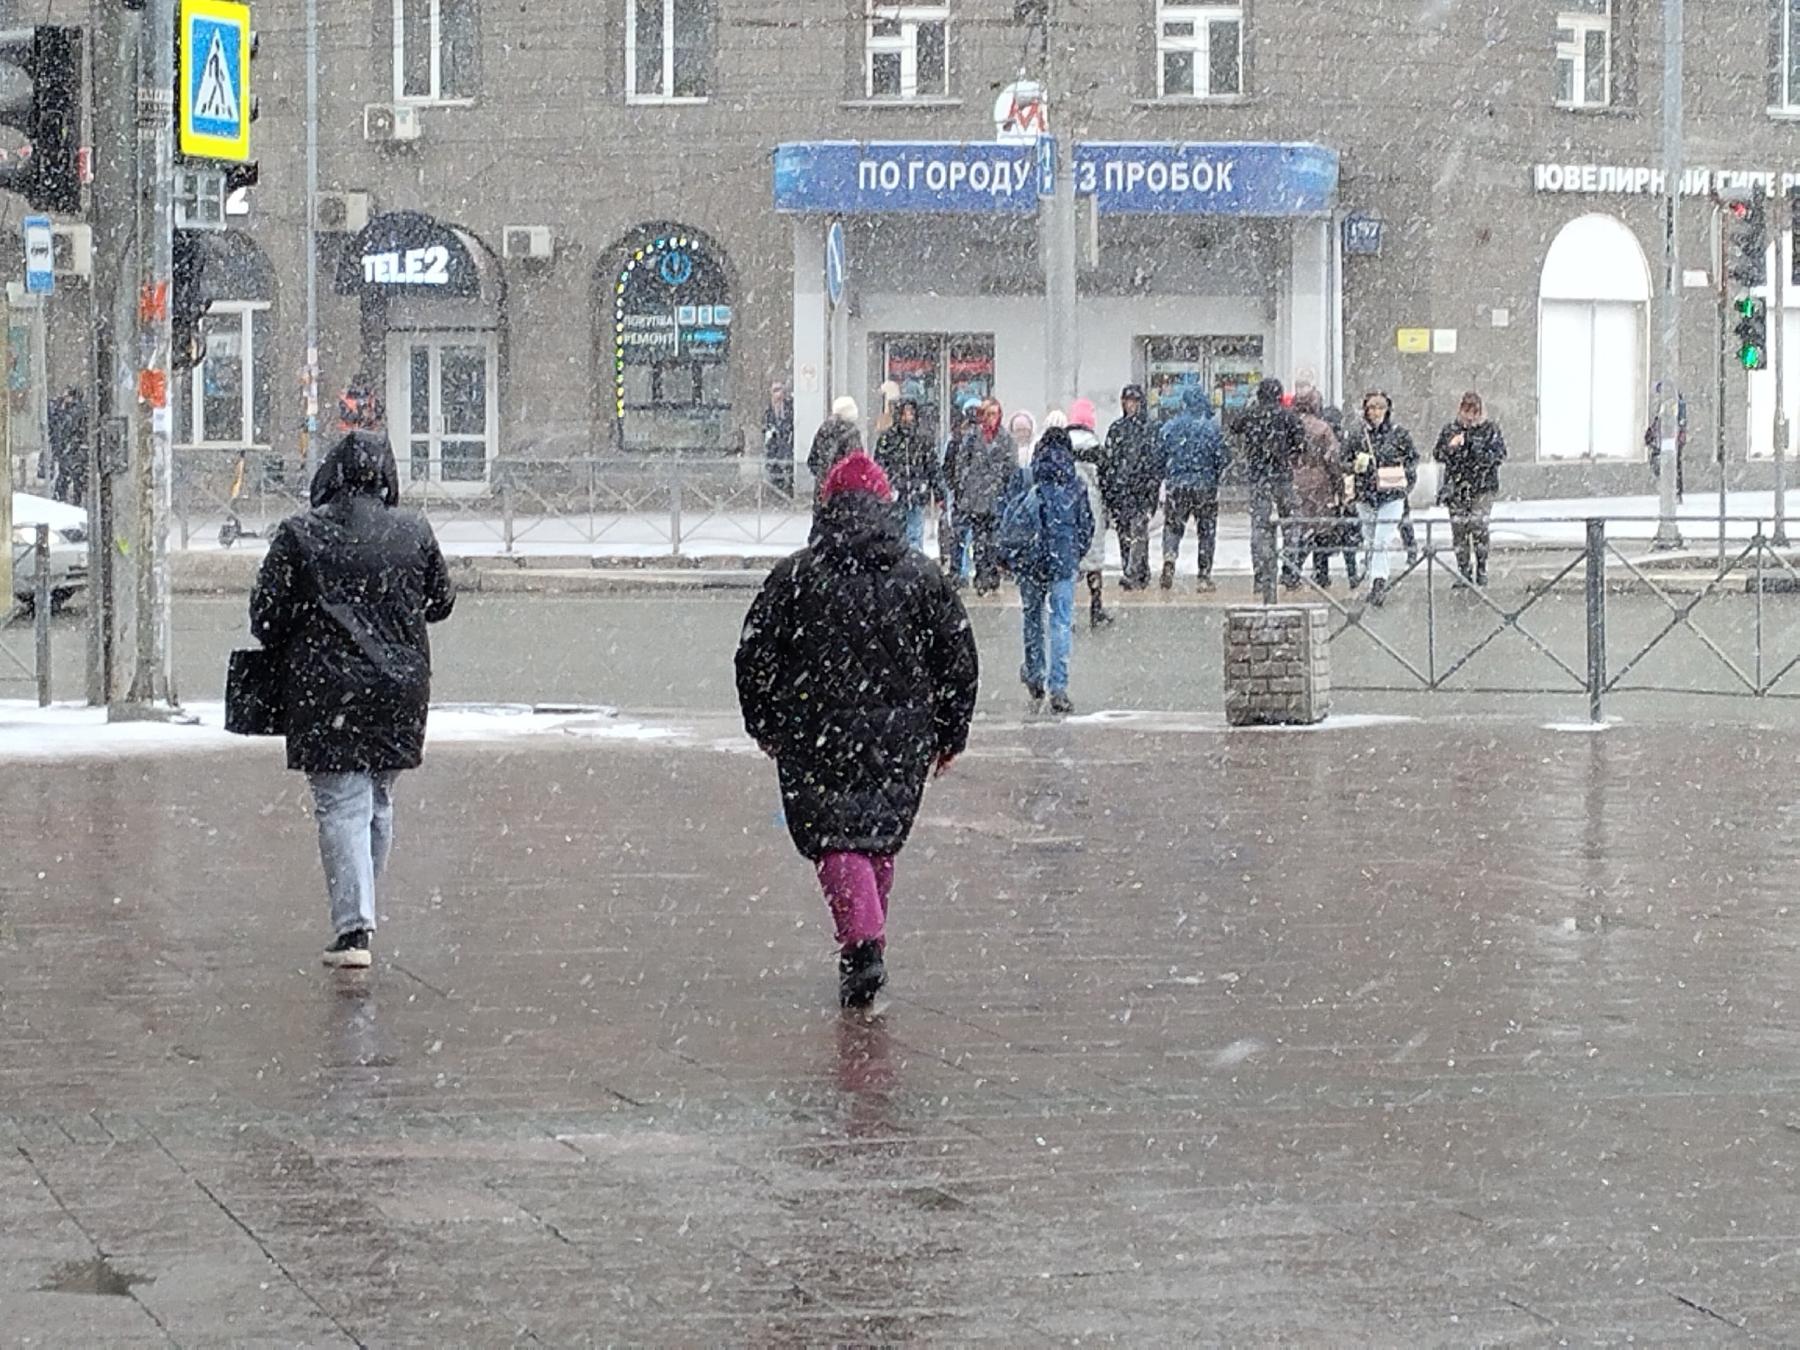 Фото Электронные повестки, смертельное ДТП в Новосибирске и снегопад в апреле - итоги недели на Сиб. фм 3